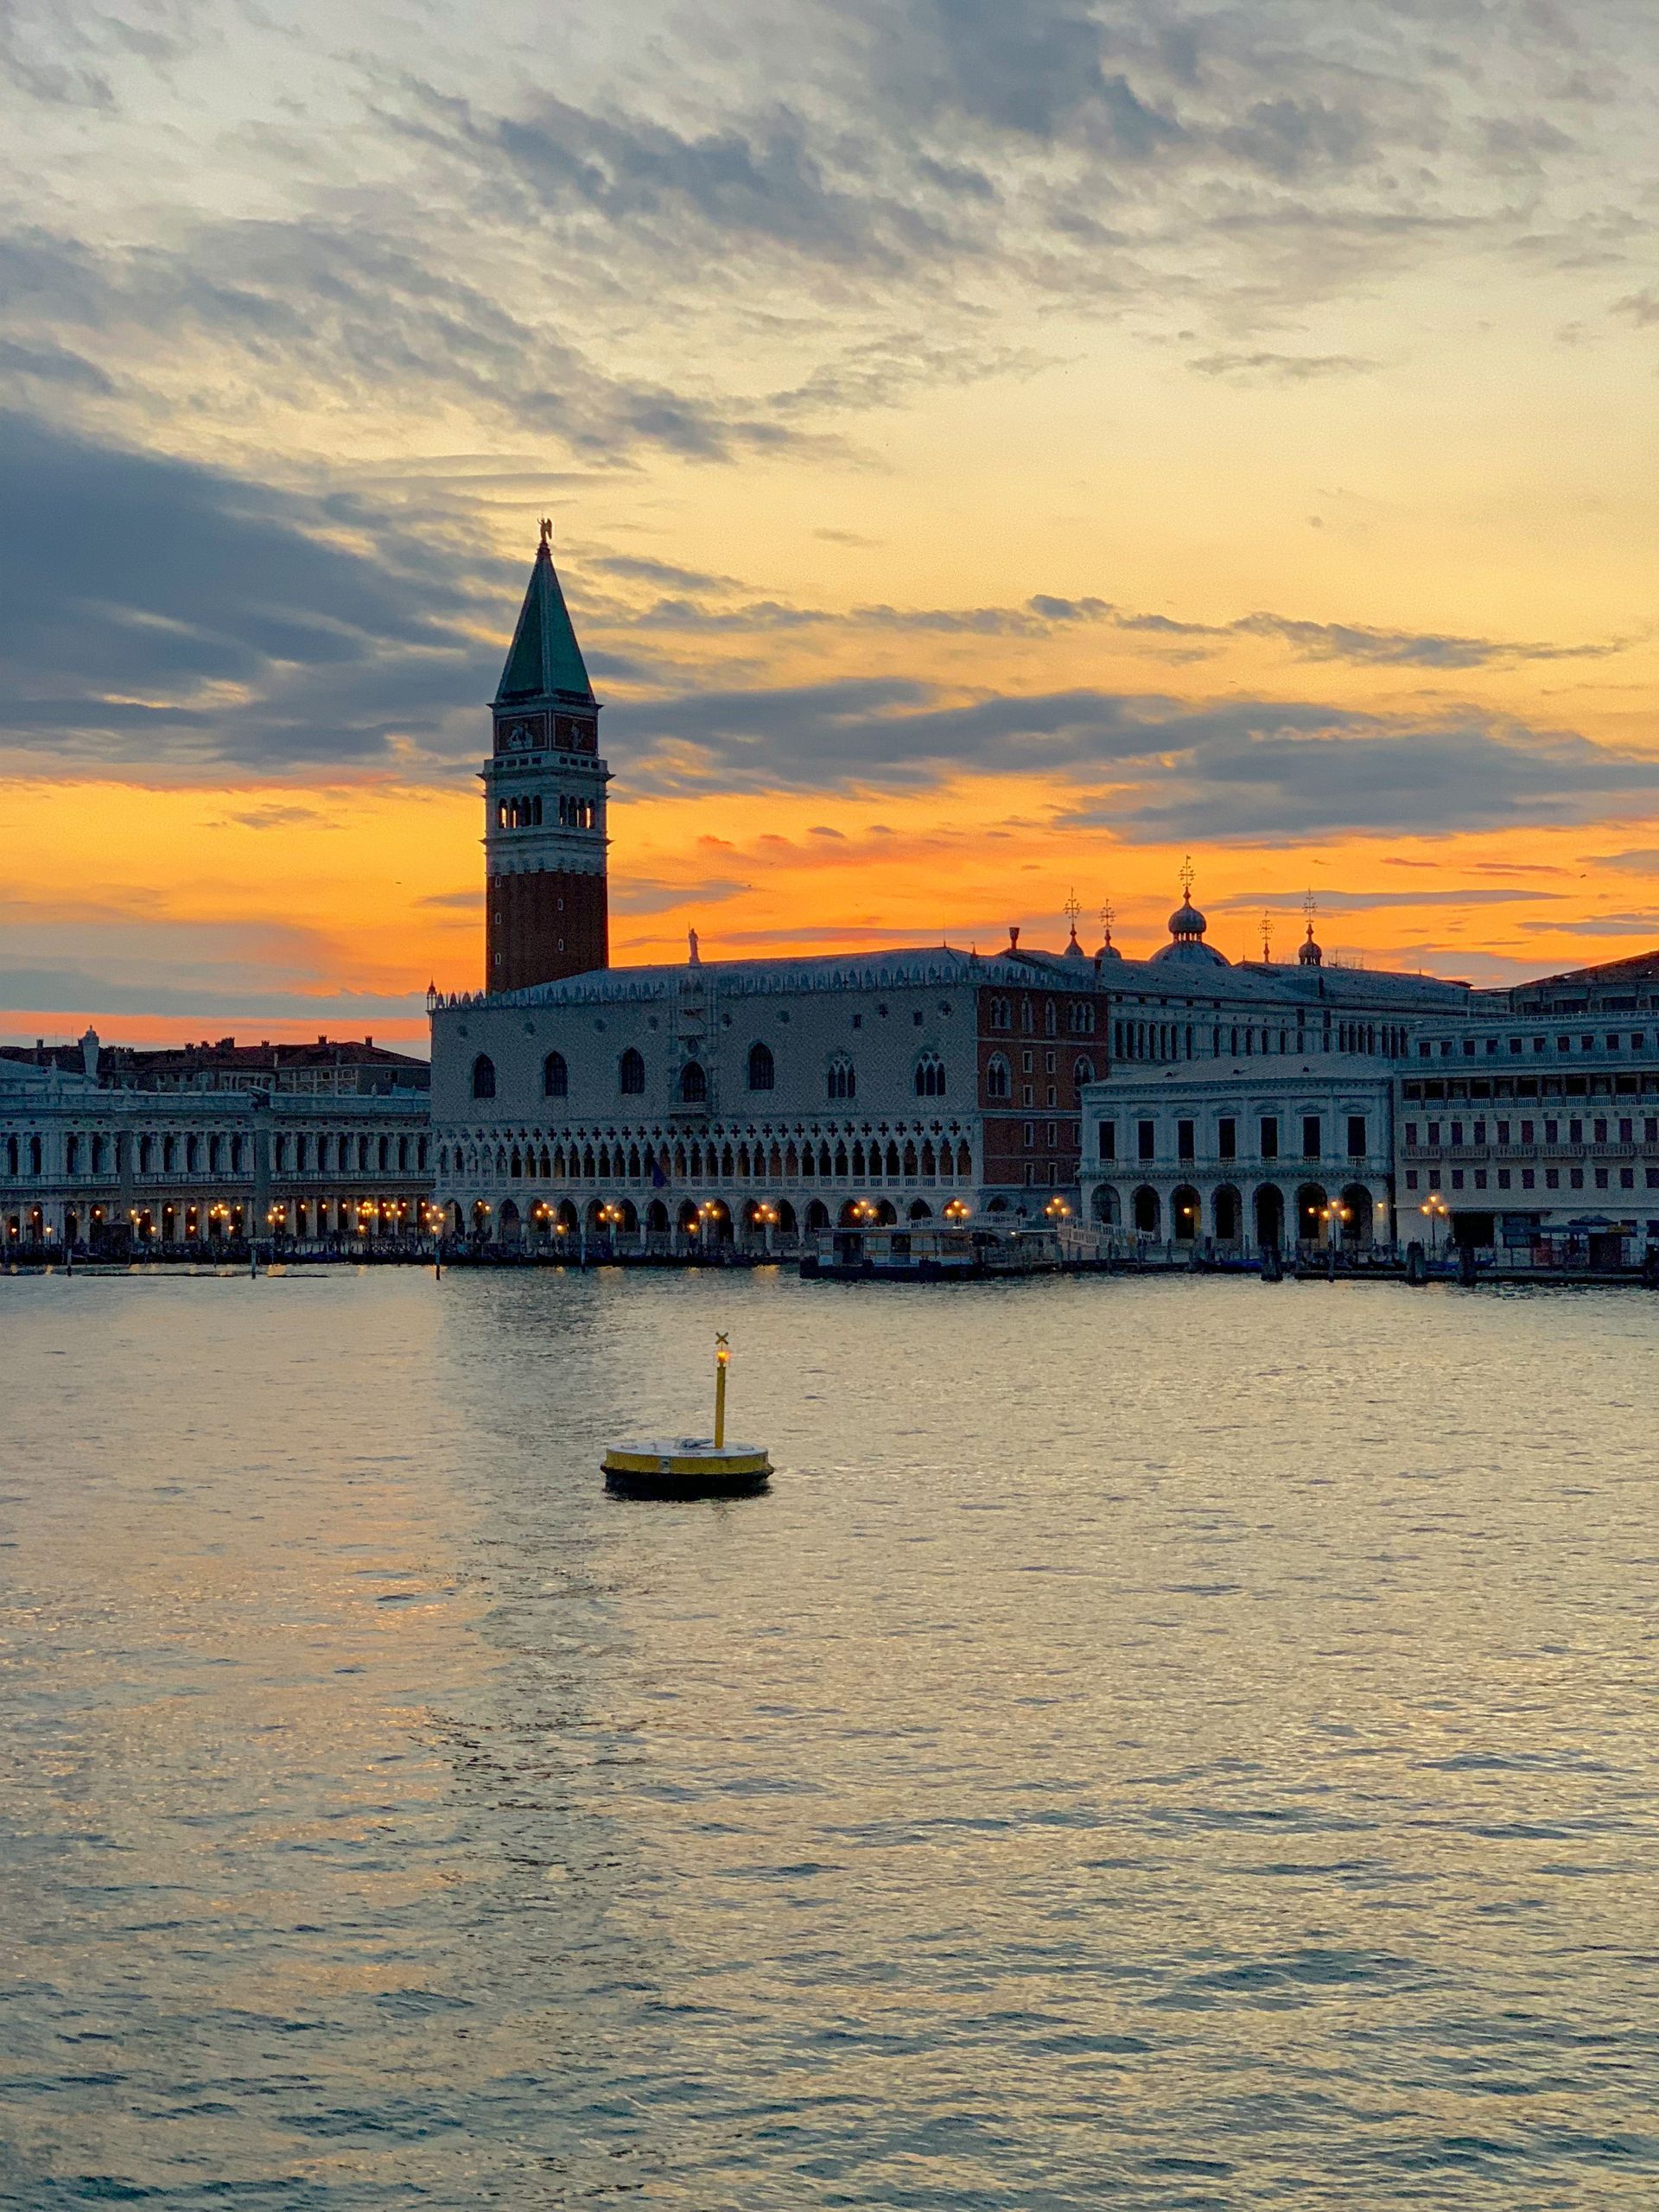 Scopri “Venice on board” e vivi Venezia con un’esperienza unica pensata per te da Palazzina Grassi.